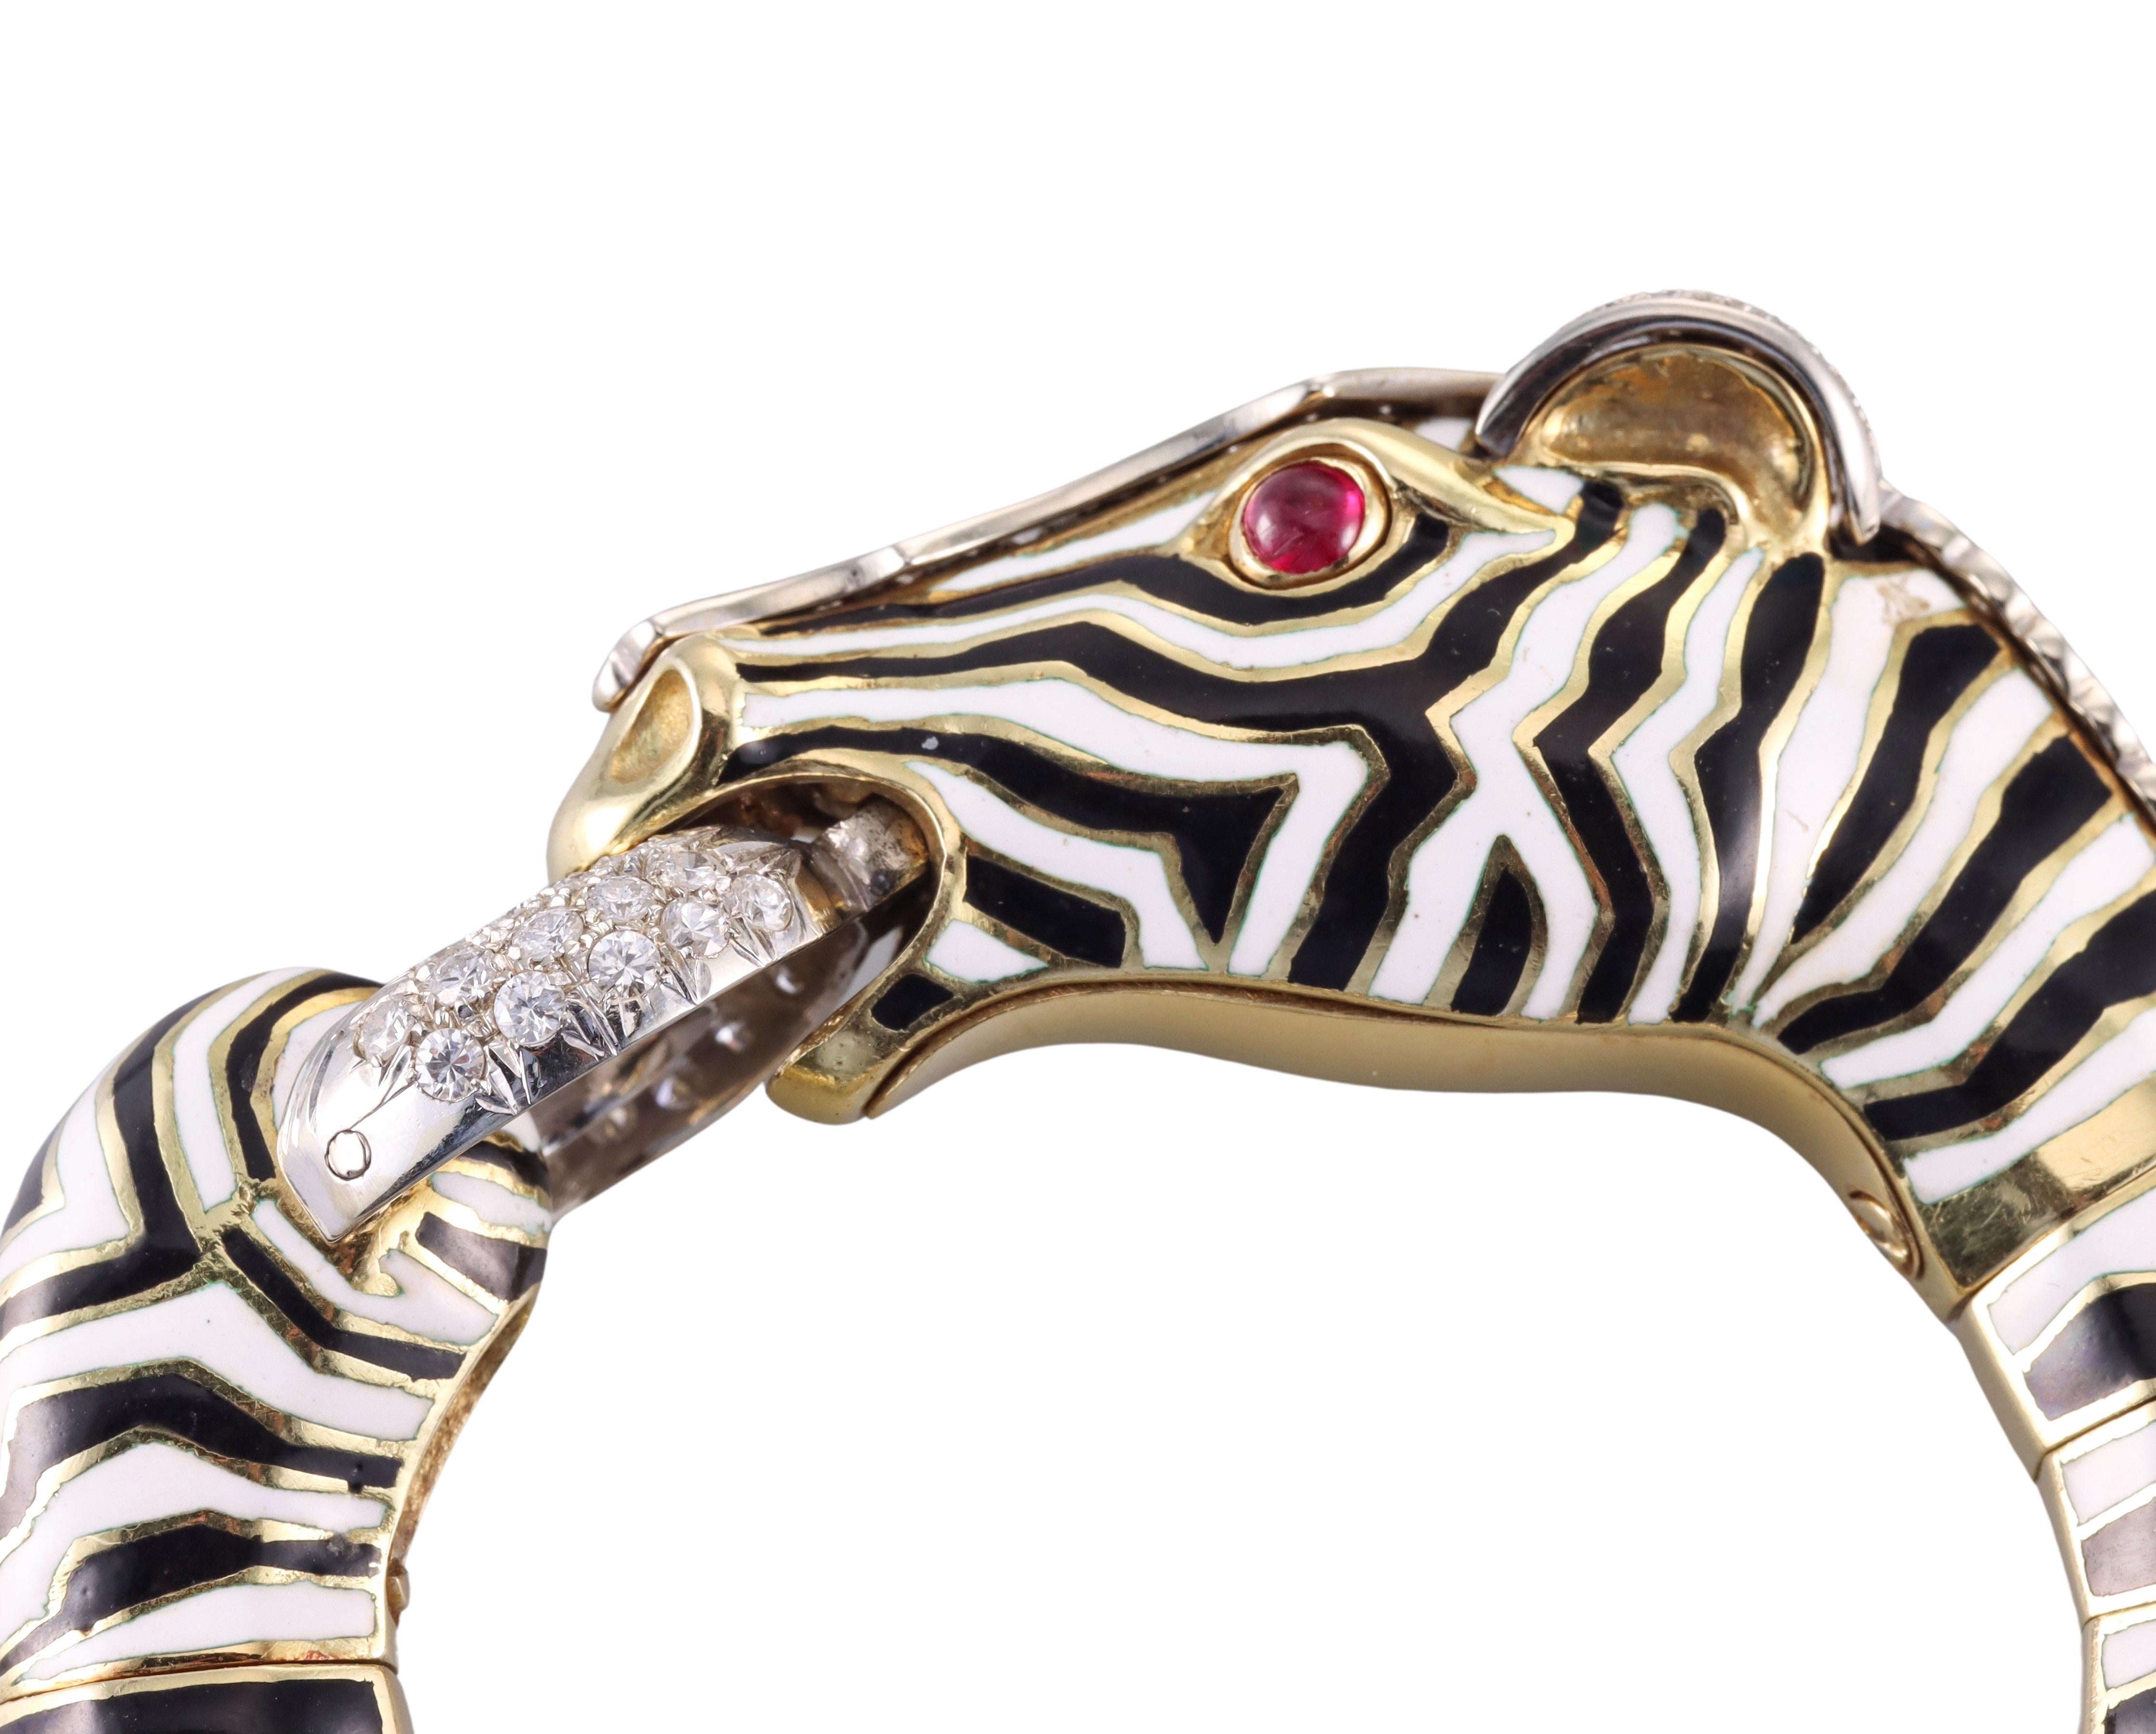 Impressive Frascarolo 18k gold Zebra bracelet, adorned with enamel, ruby cabochon eyes and approximately 1.30ctw H/VS diamonds. Bracelet will fit an approximately 7